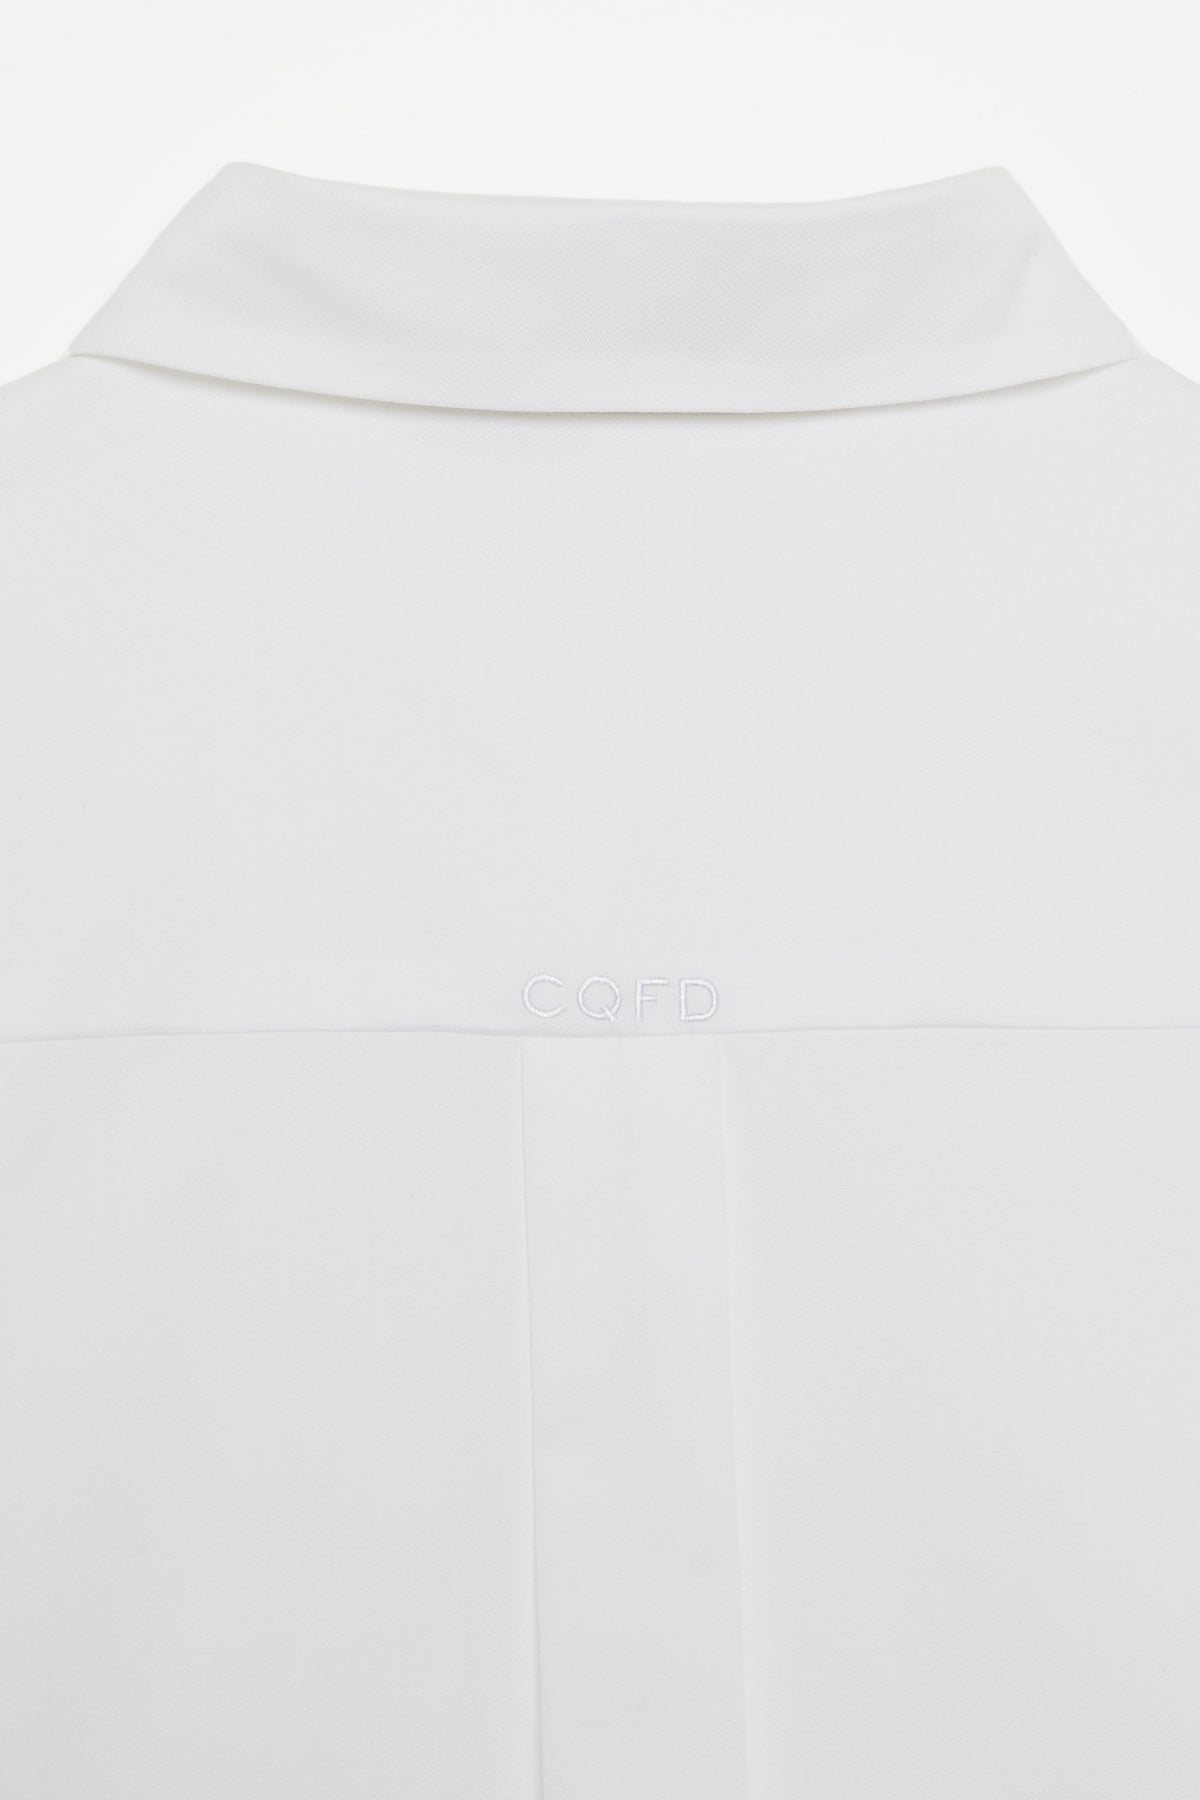 Chemise blanche 100% coton biologique certifié GOTS. Créée pour sublimer toutes les femmes, de la taille 34 à la taille 56. Disponible en précommande unique, système de production respectueux de l'environnement. Slow fashion et luxe éthique. Confectionnée en France.